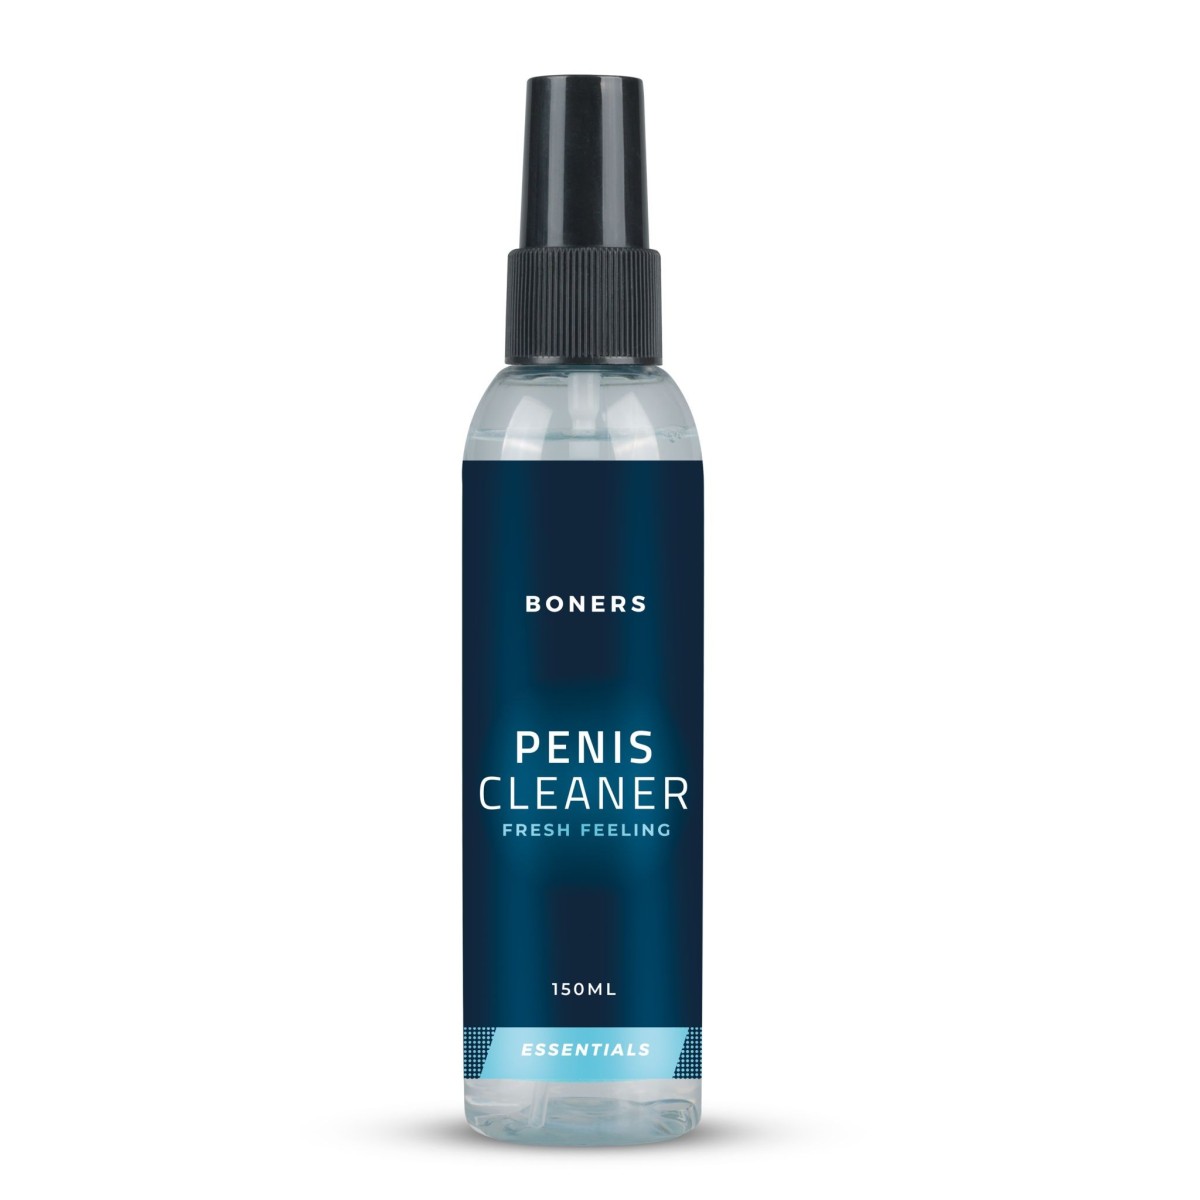 Boners Penis Cleaner 150 ml, čistící a osvěžující sprej na penis